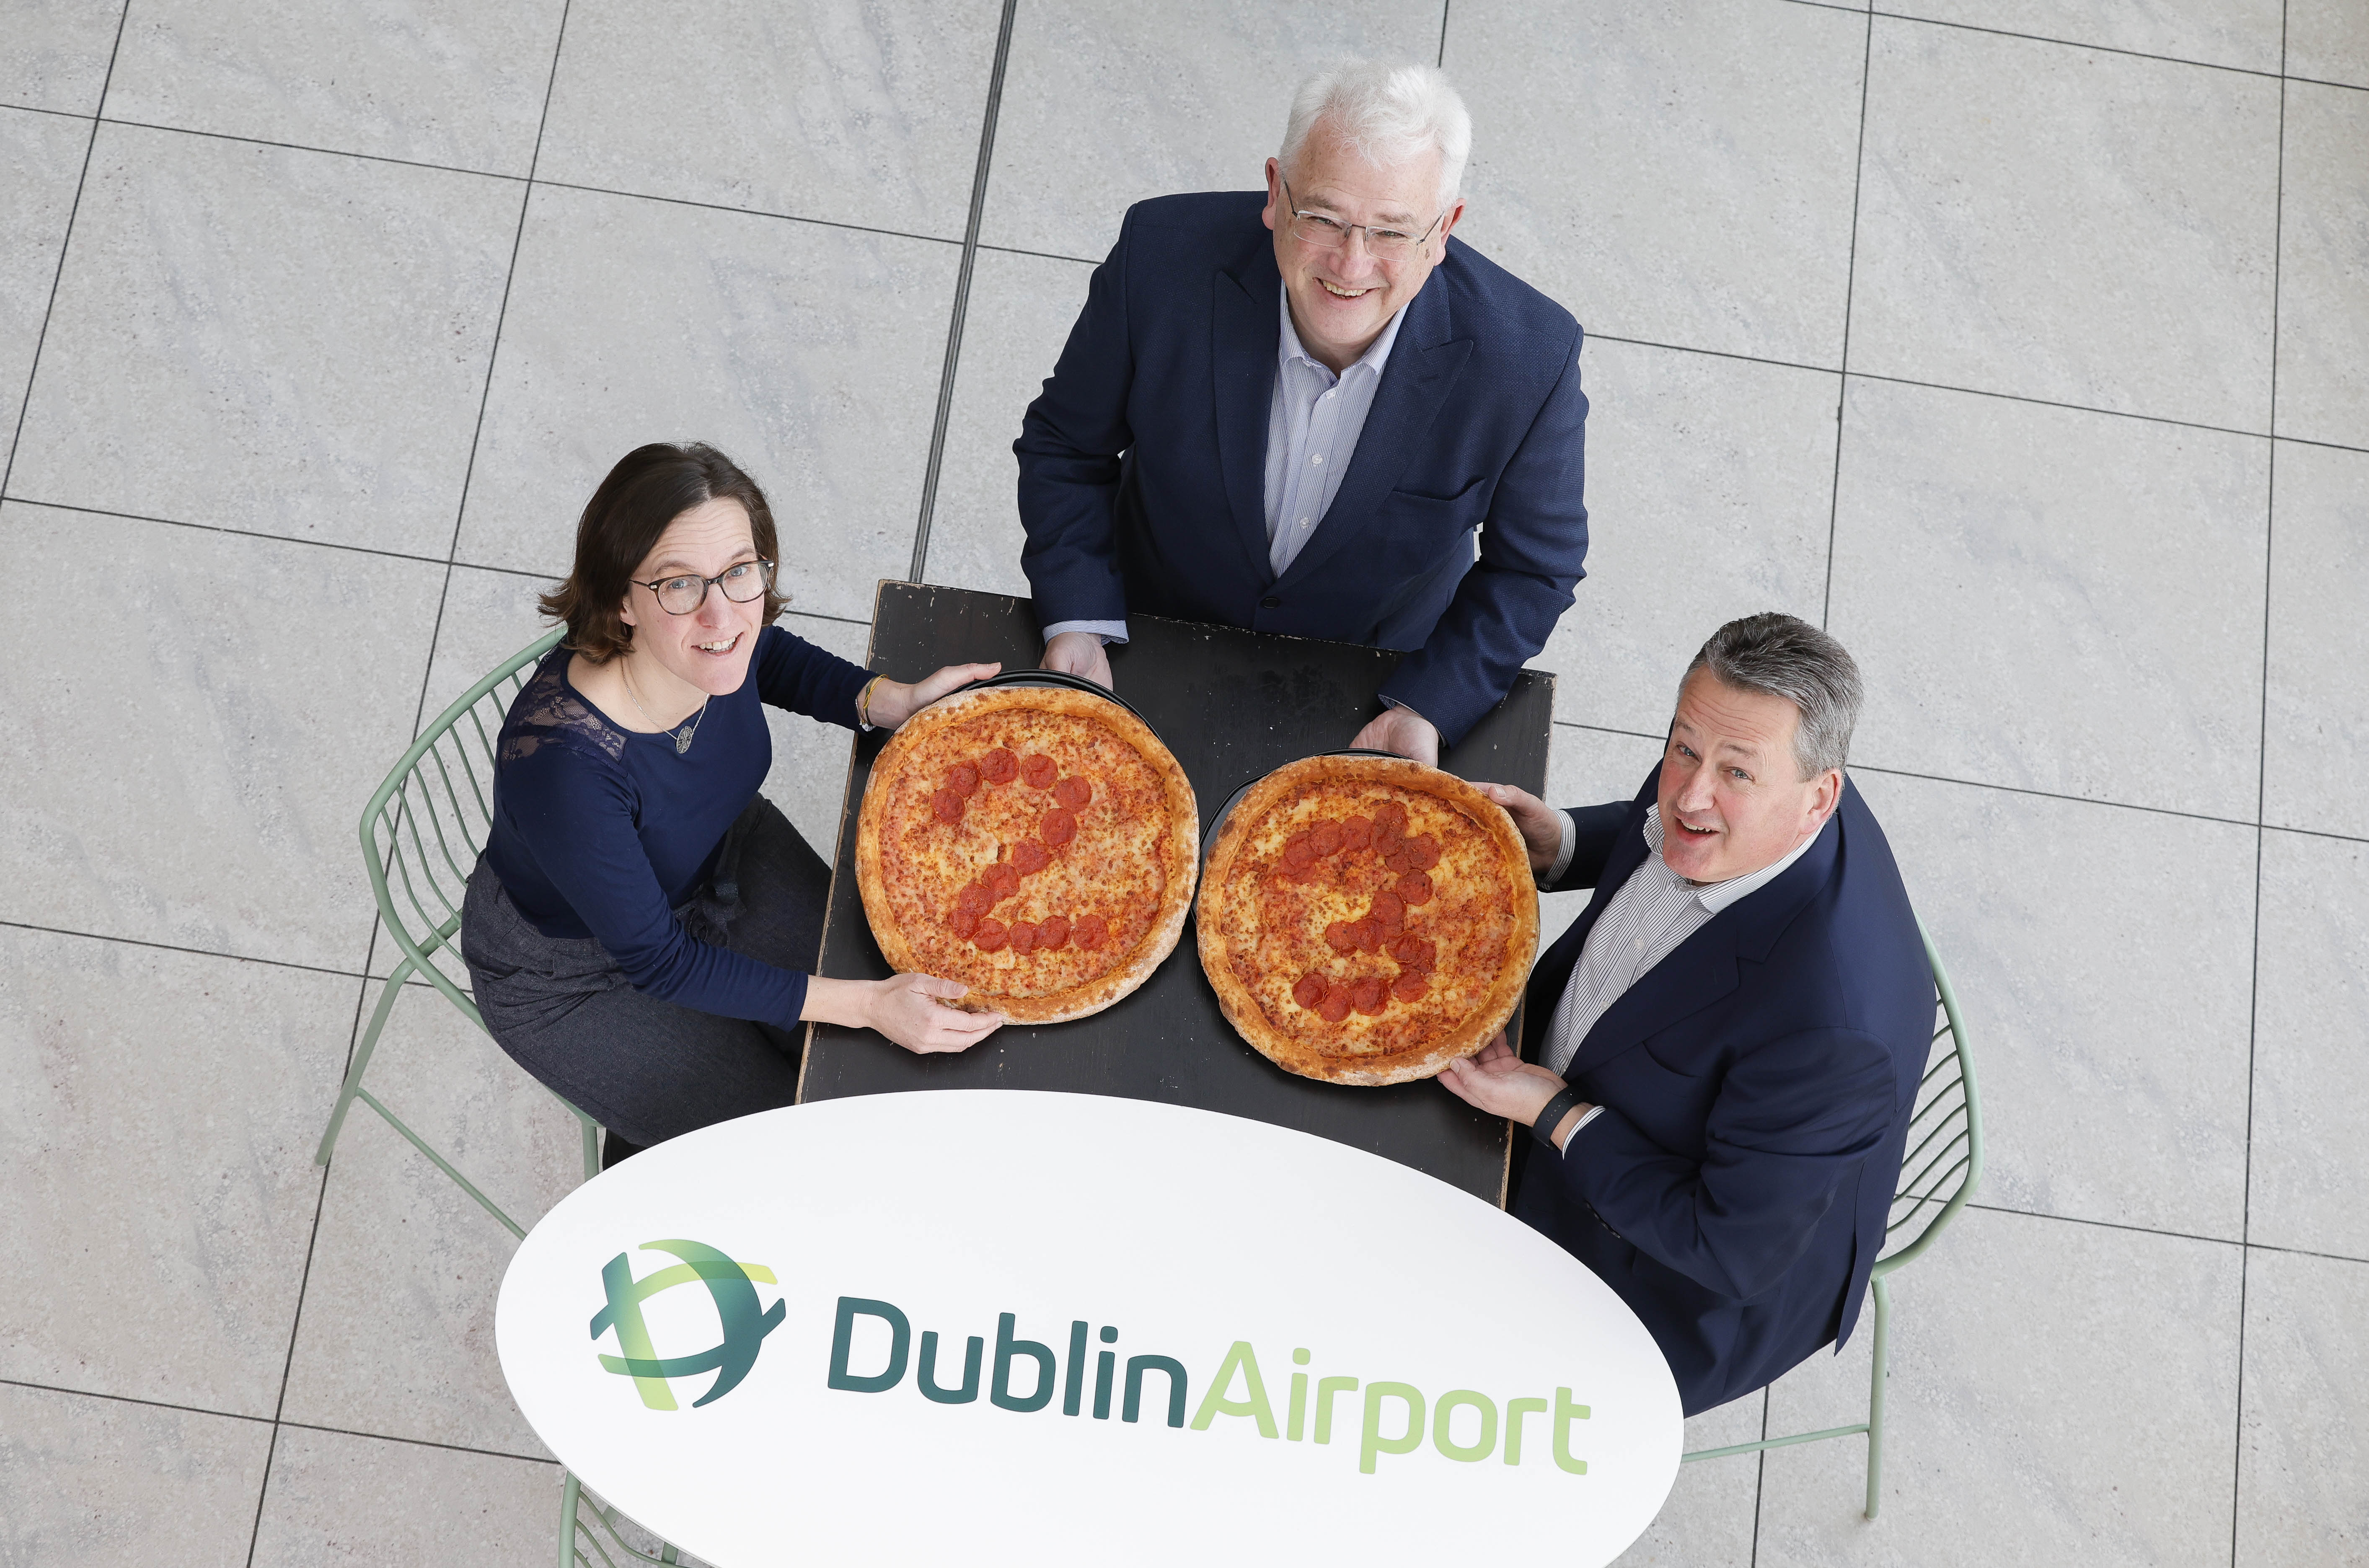 L'aéroport de Dublin desservira jusqu'à 23 points de vente de nourriture et de boissons nouveaux et améliorés pour les passagers